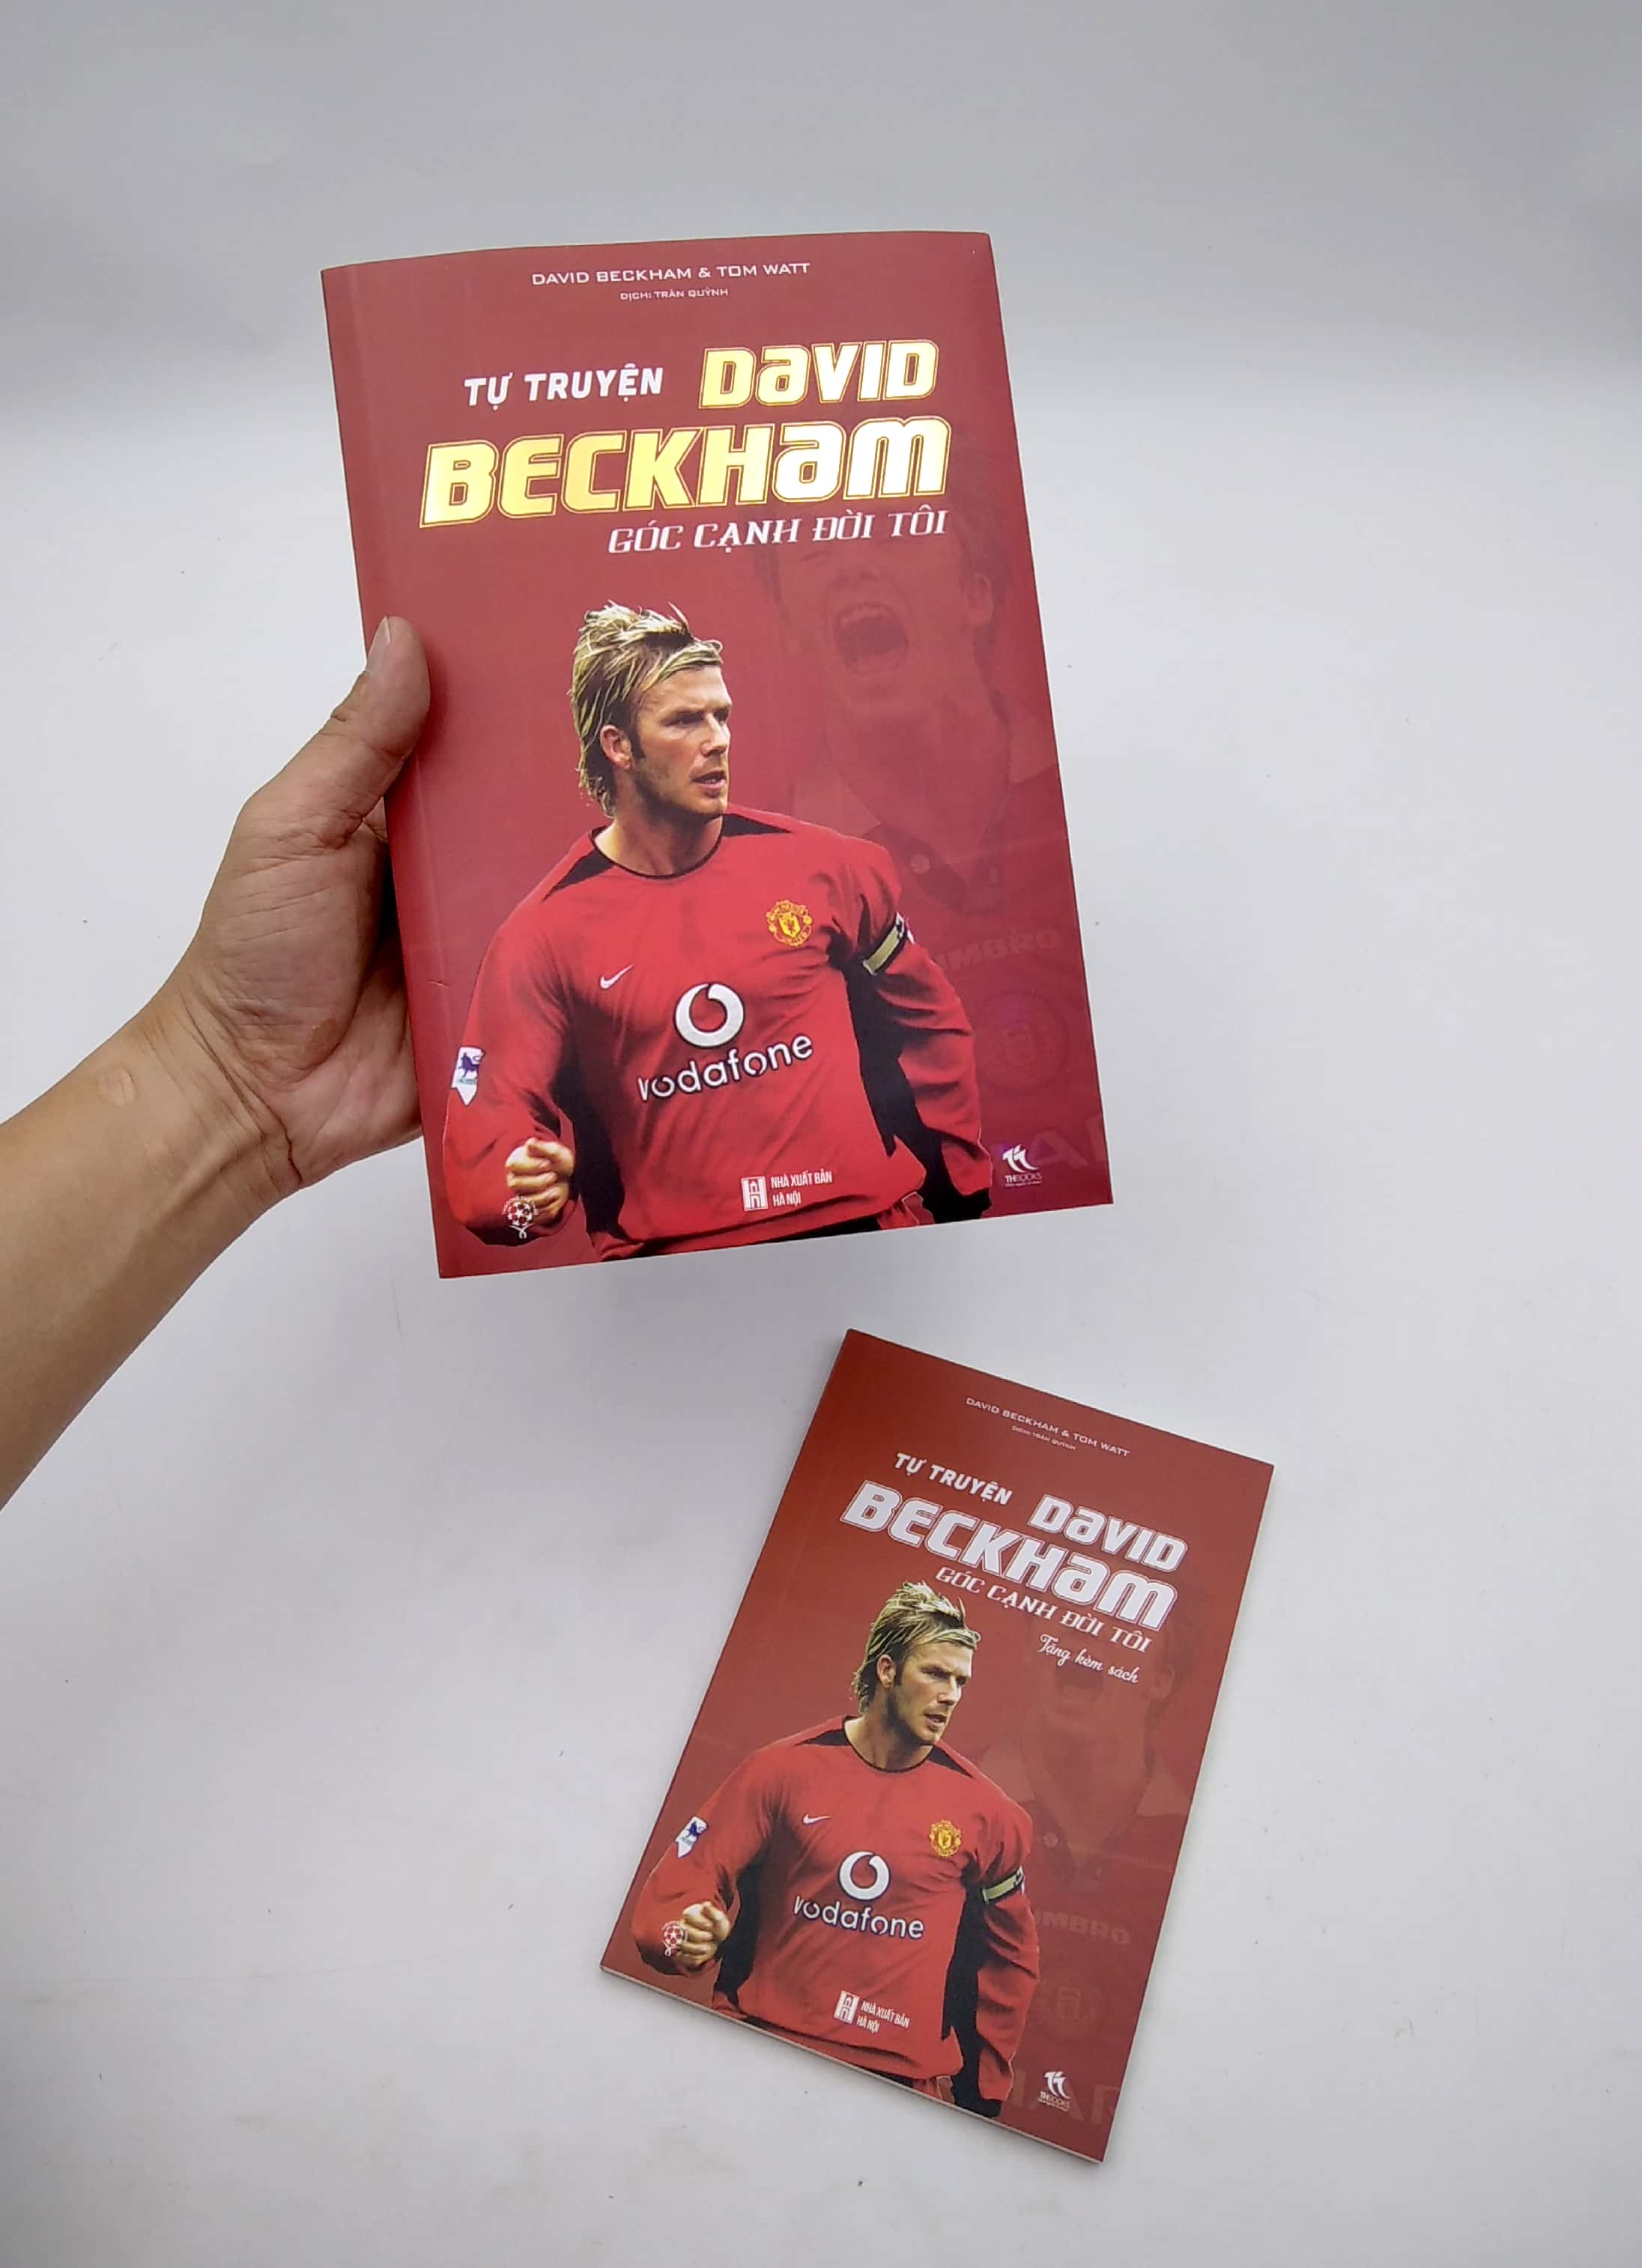 Tự Truyện David Beckham - Góc Cạnh Đời Tôi PDF